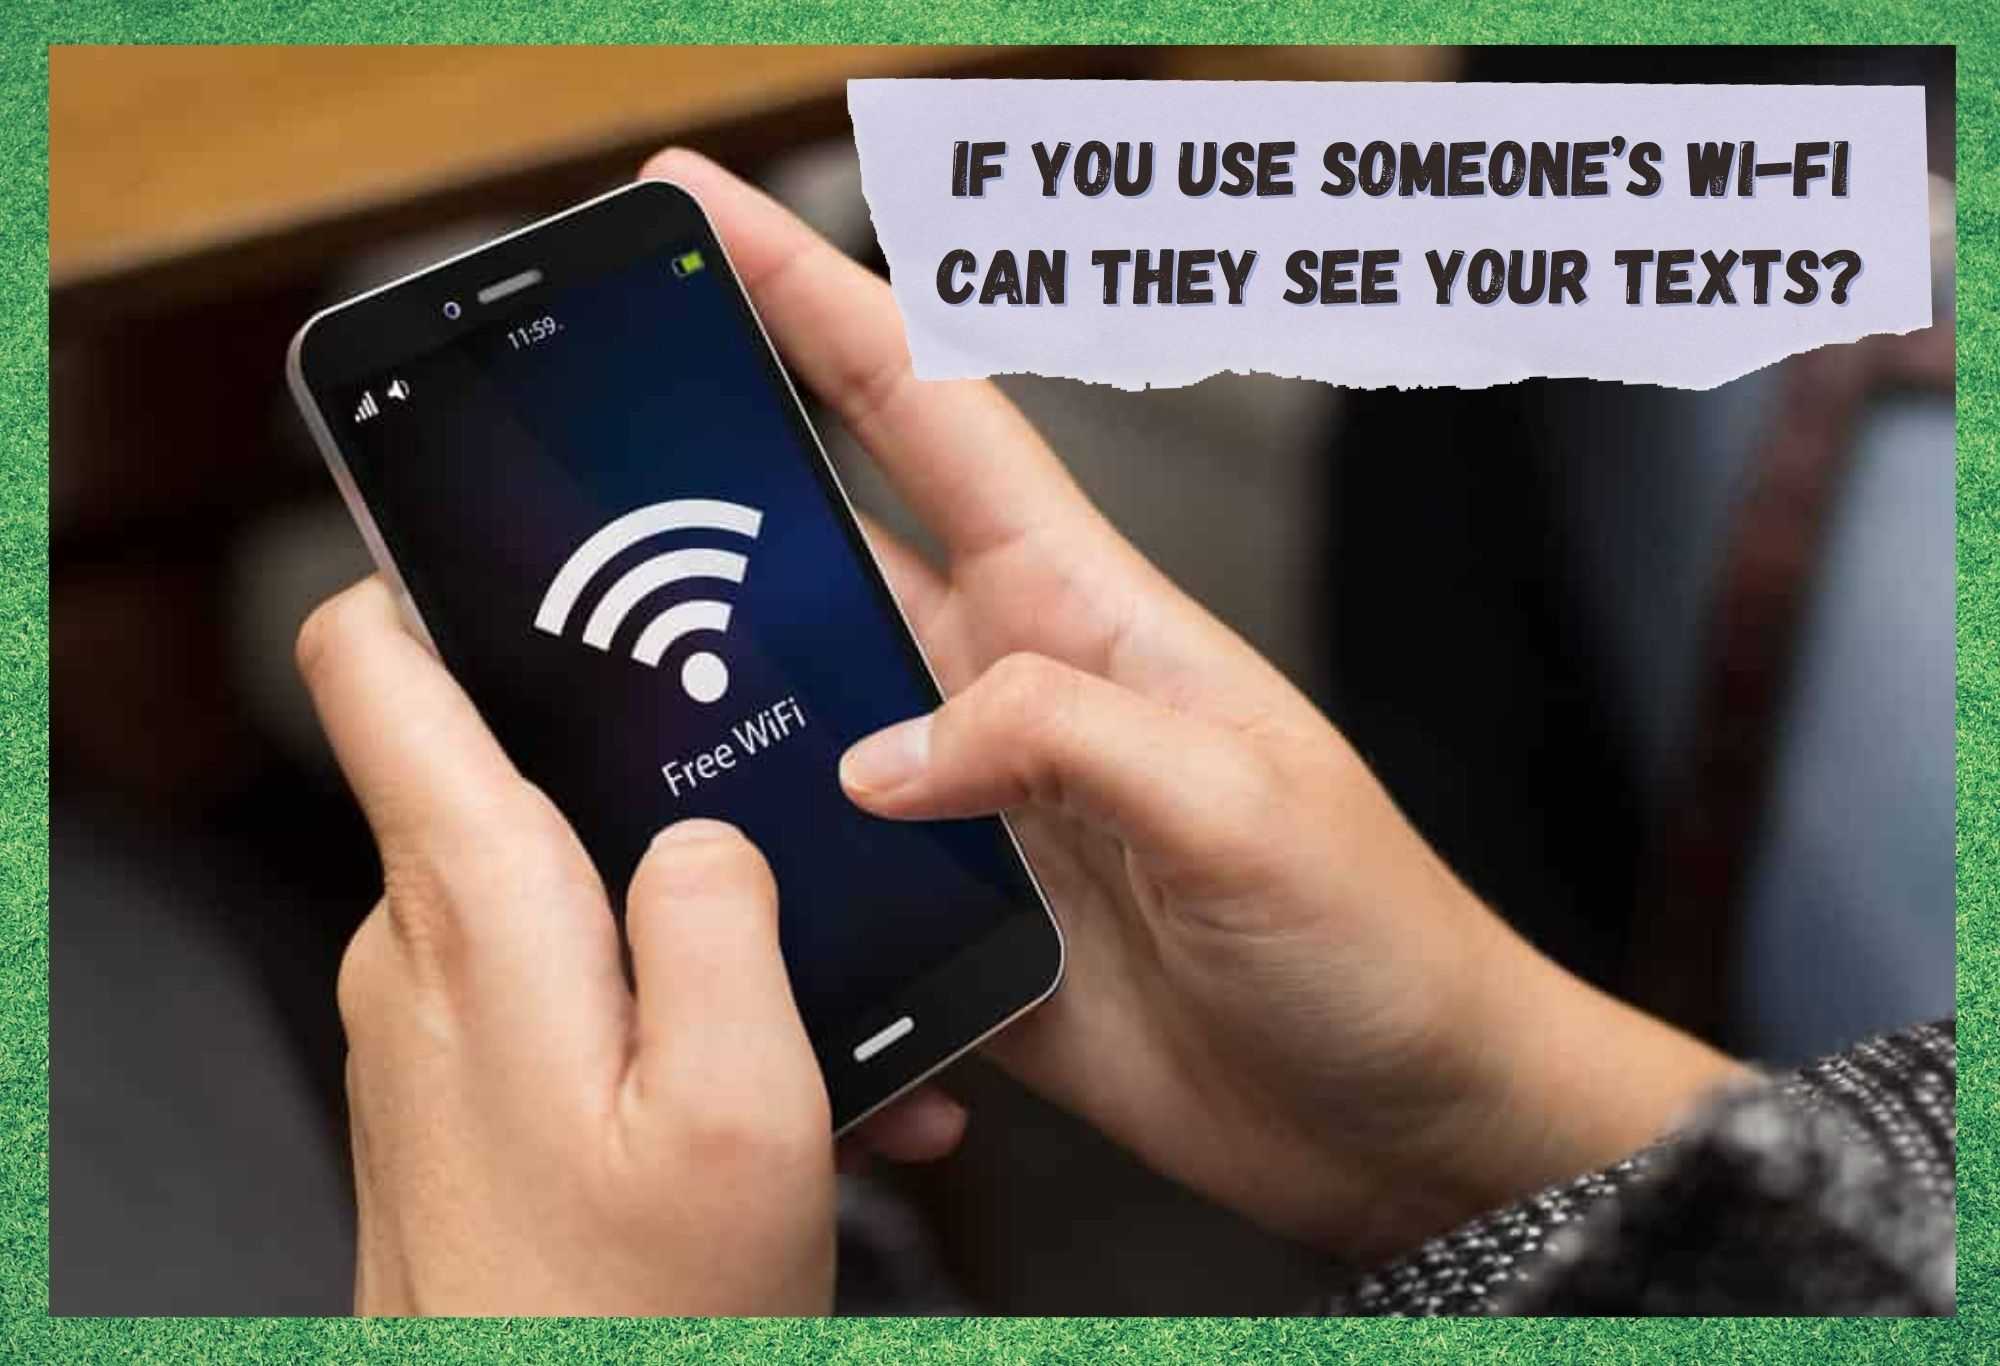 თუ თქვენ იყენებთ ვინმეს WiFi-ს, შეუძლიათ ნახონ თქვენი ტექსტები?